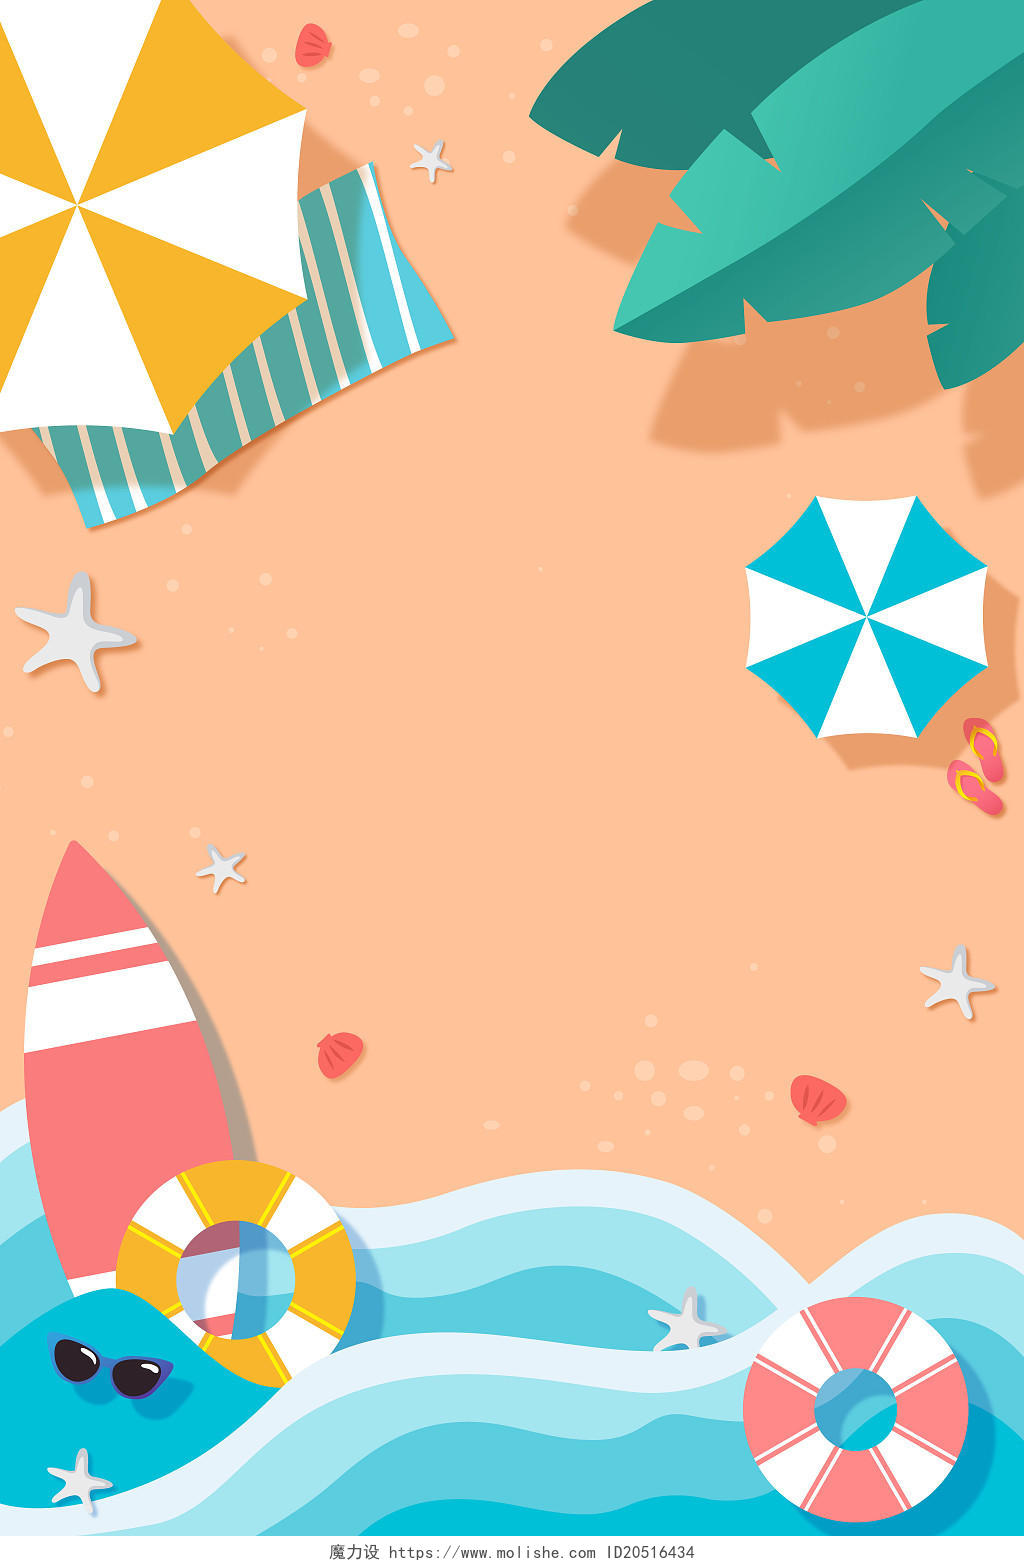 夏天海边沙滩海浪冲浪游泳圈日光浴贝壳海星墨镜扁平化插画背景扁平夏天海边沙滩插画